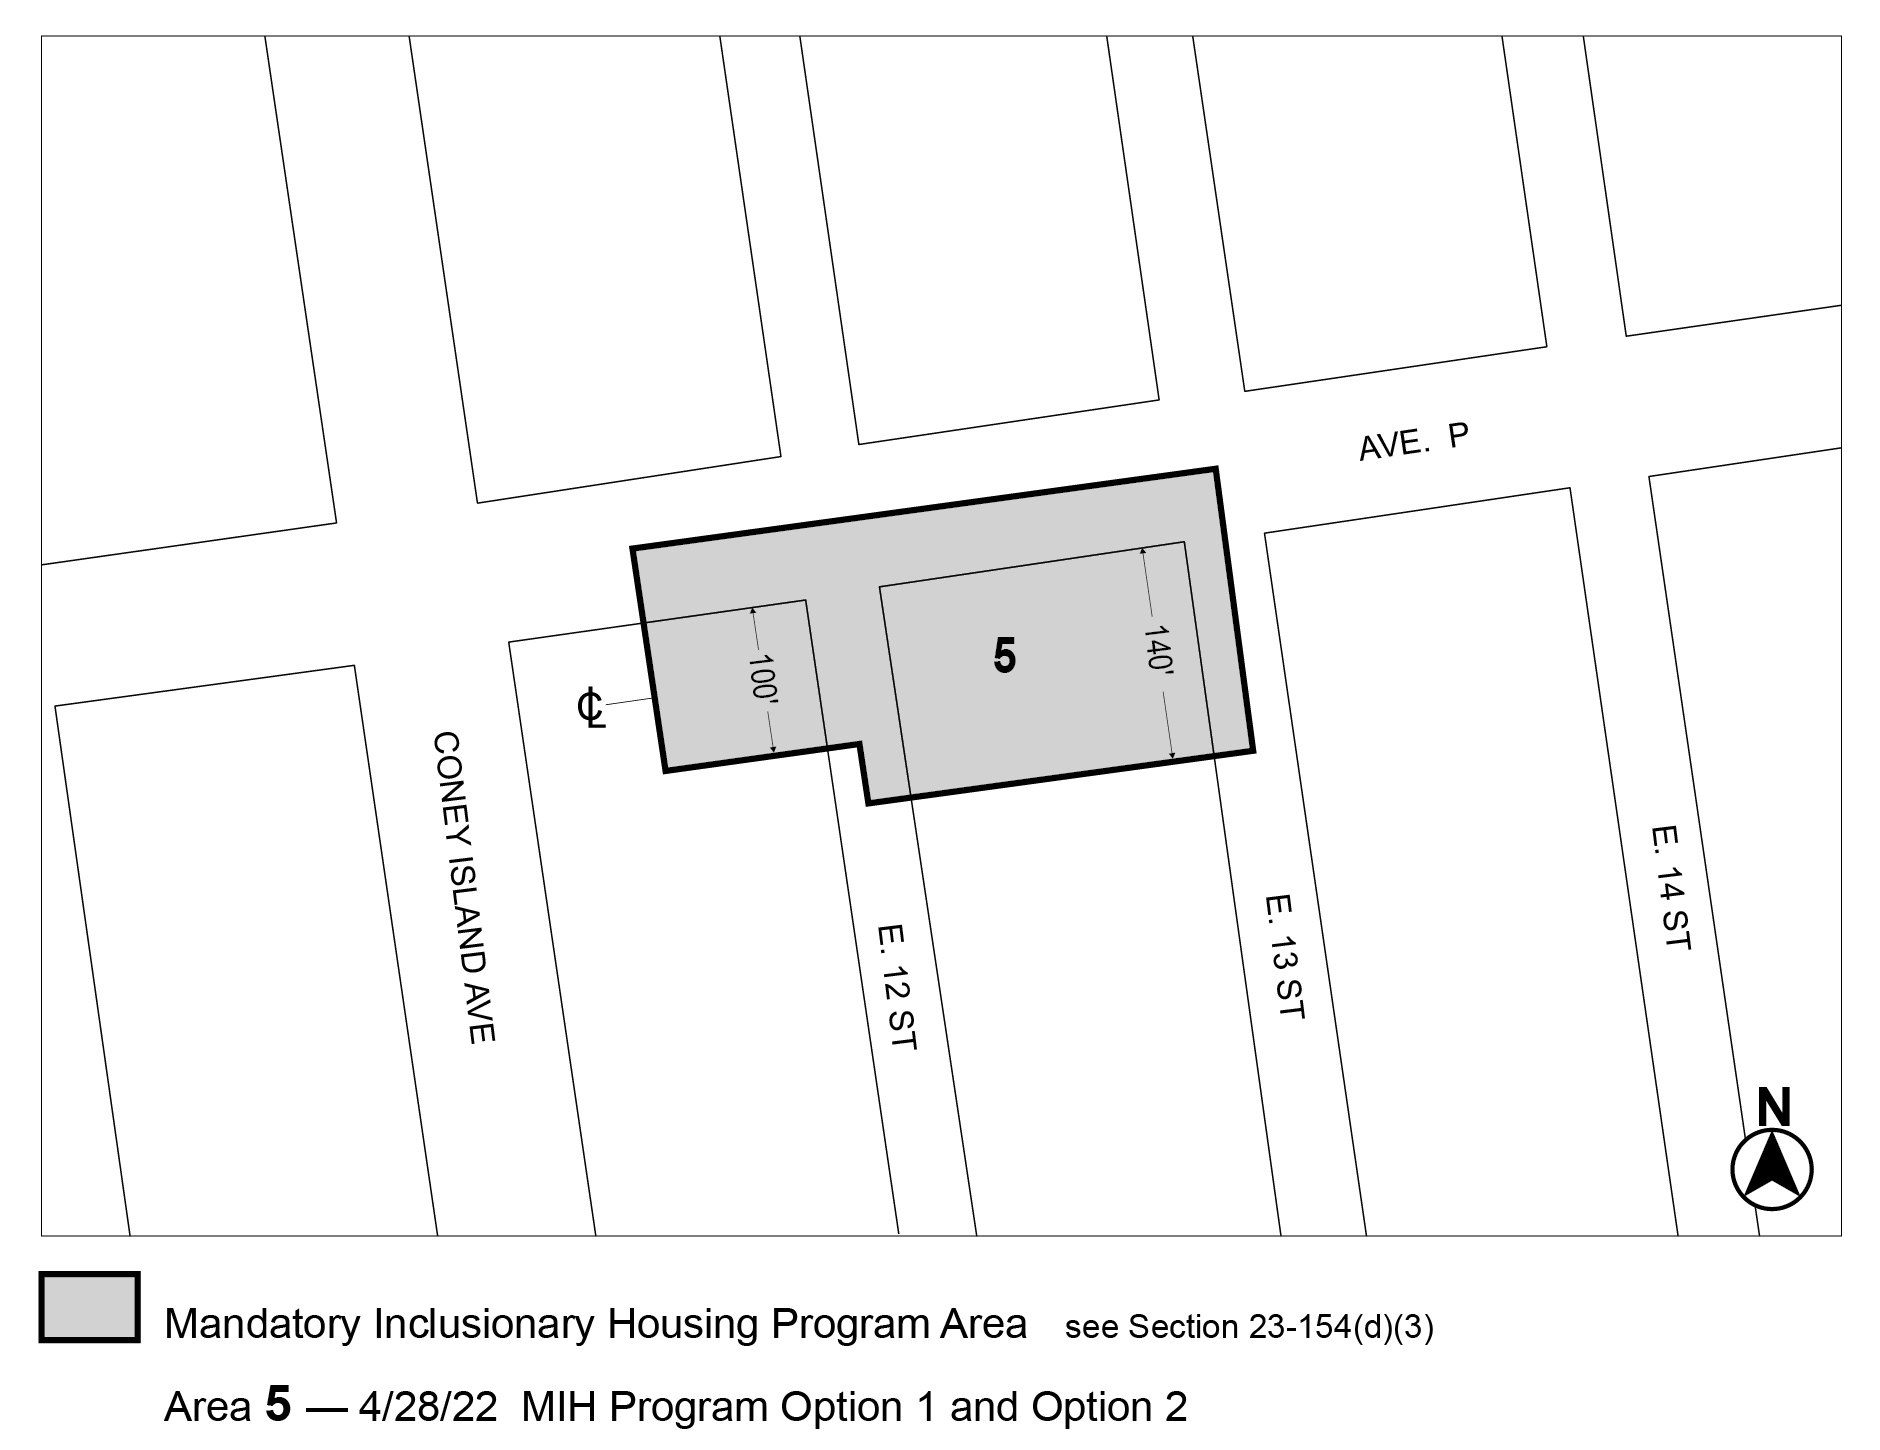 APPENDIX F, Brooklyn CD 15, Map 5, Area 5 (Option 1, Option 2) per 1220 Avenue P (N 210099 ZRK) adopted 28 April 2022